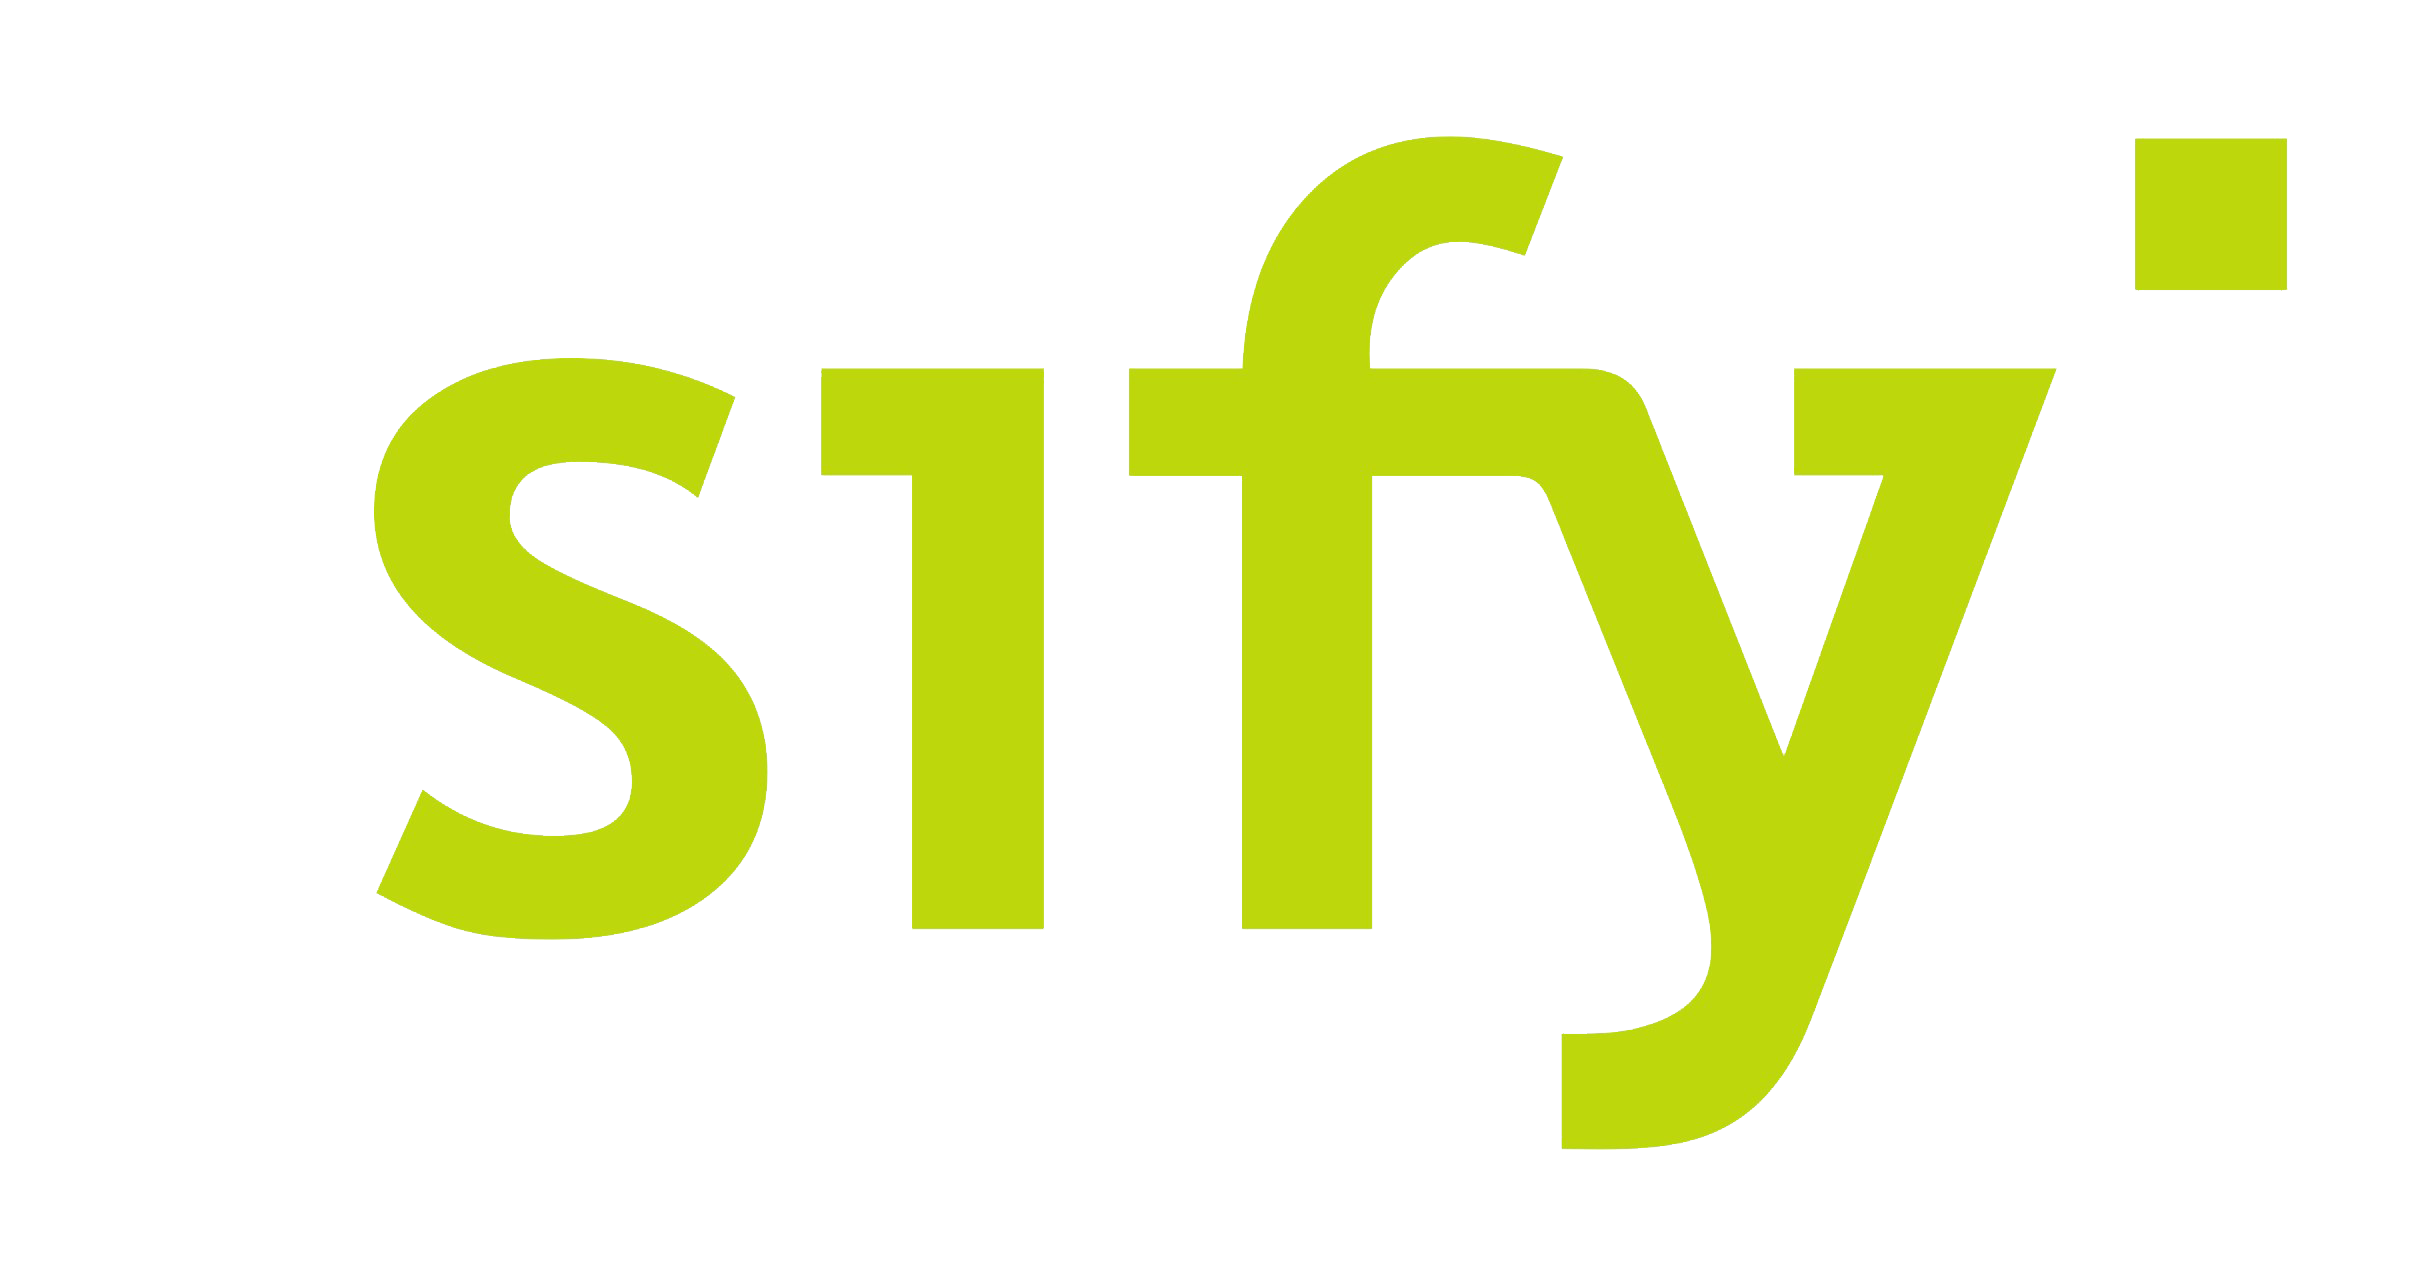 Sify - Wikipedia